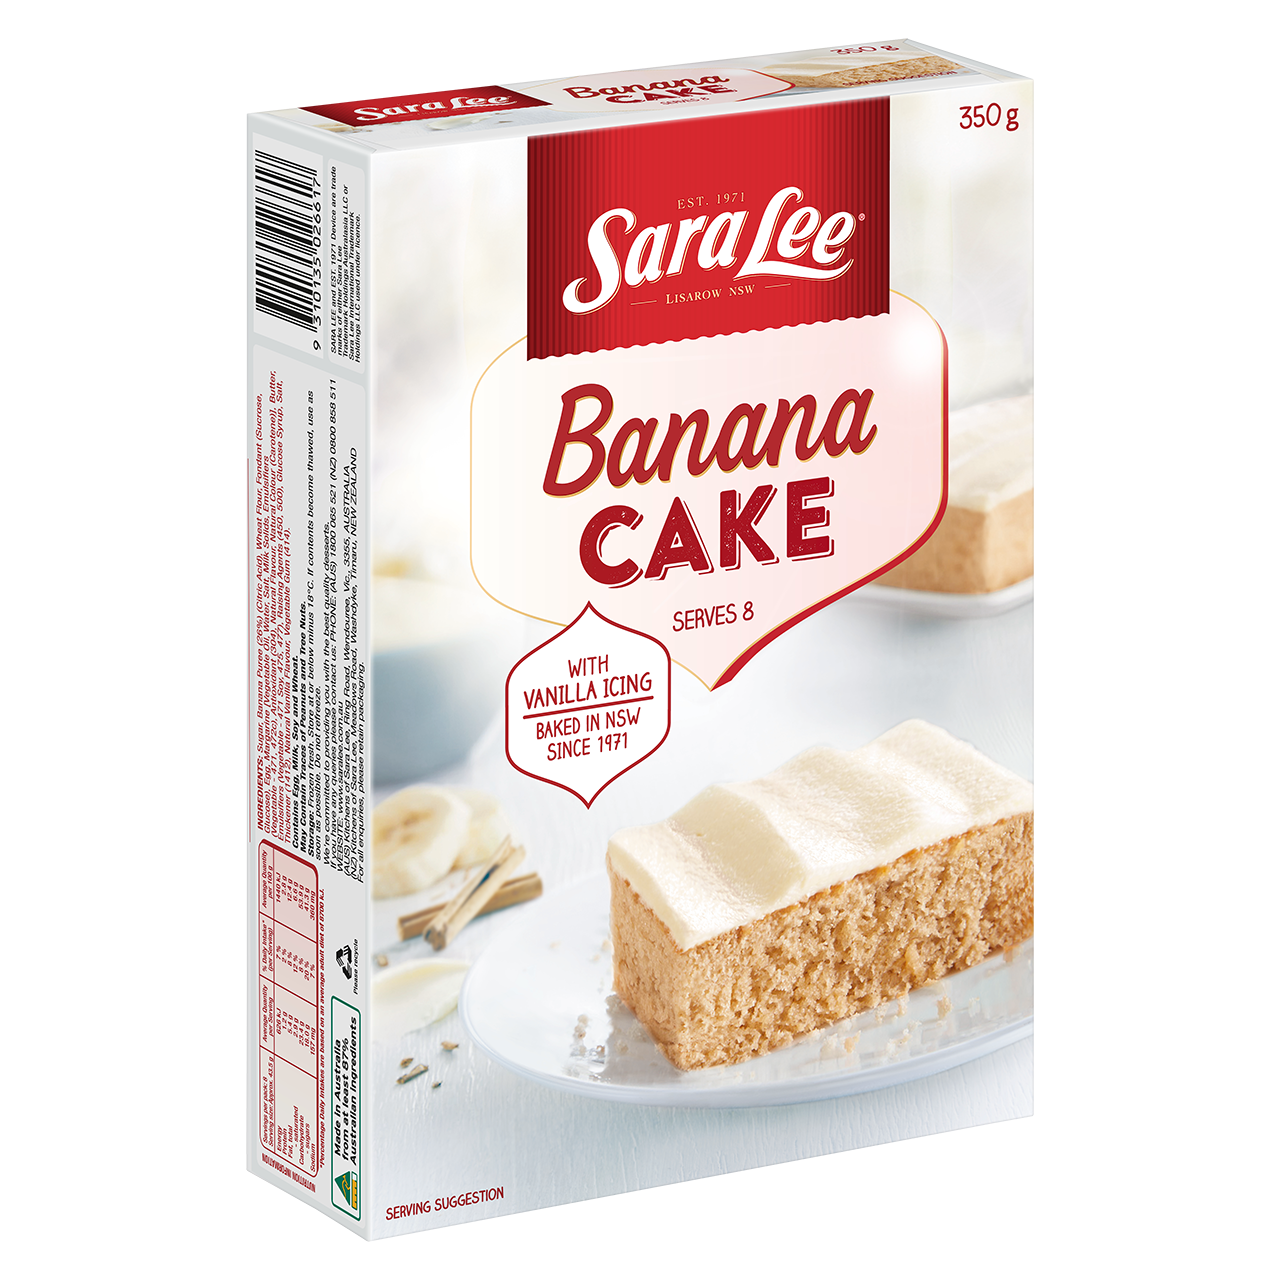 https://saralee.com.au/wp-content/uploads/2023/02/JSL2200071_SL-Banana-Cake_350g_LEFT-ANGLE_V1.png